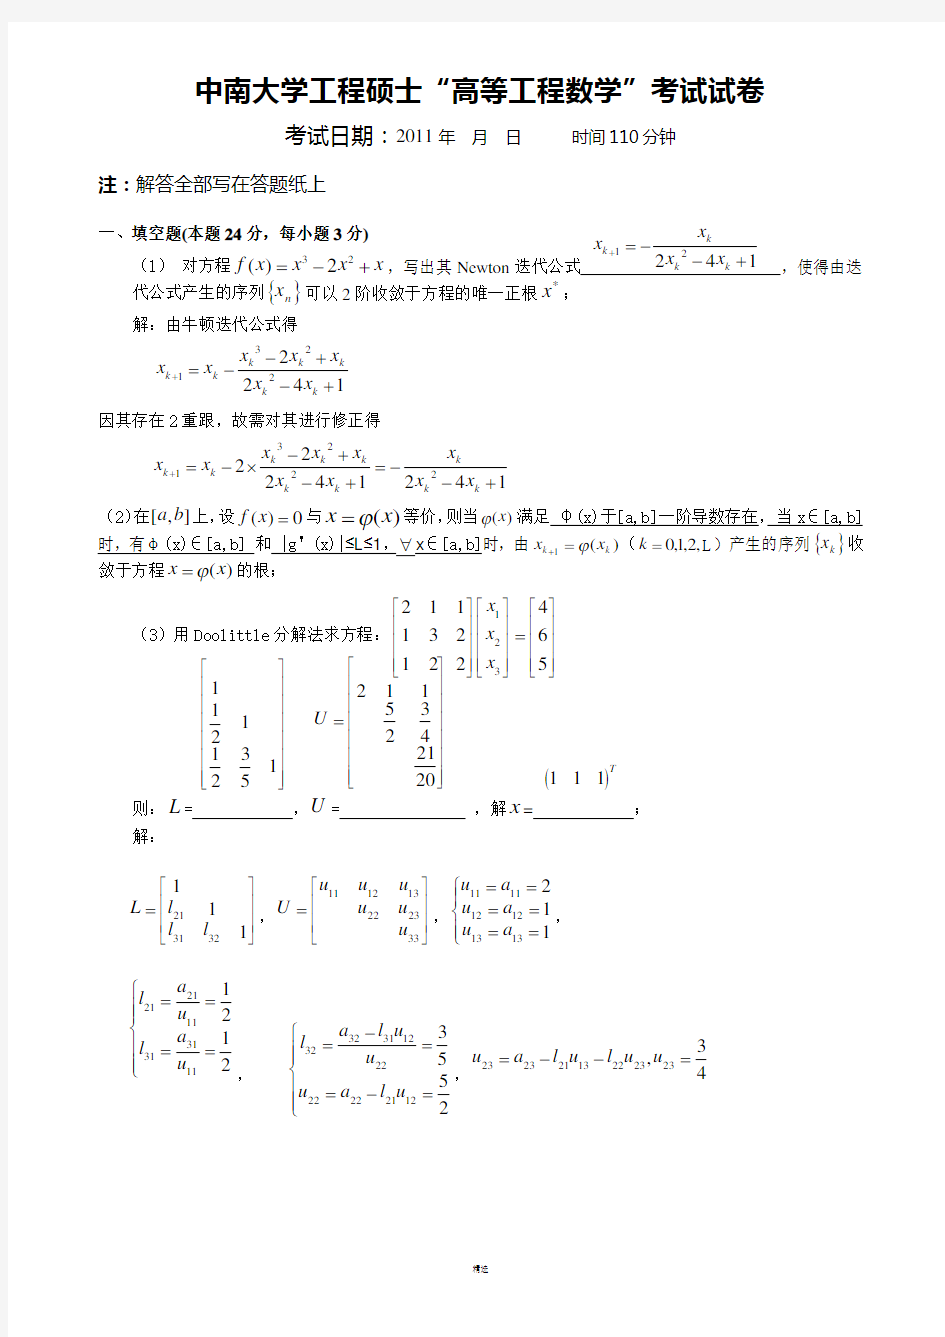 中南大学最全高等工程数学试题集免费下载(部分含答案)